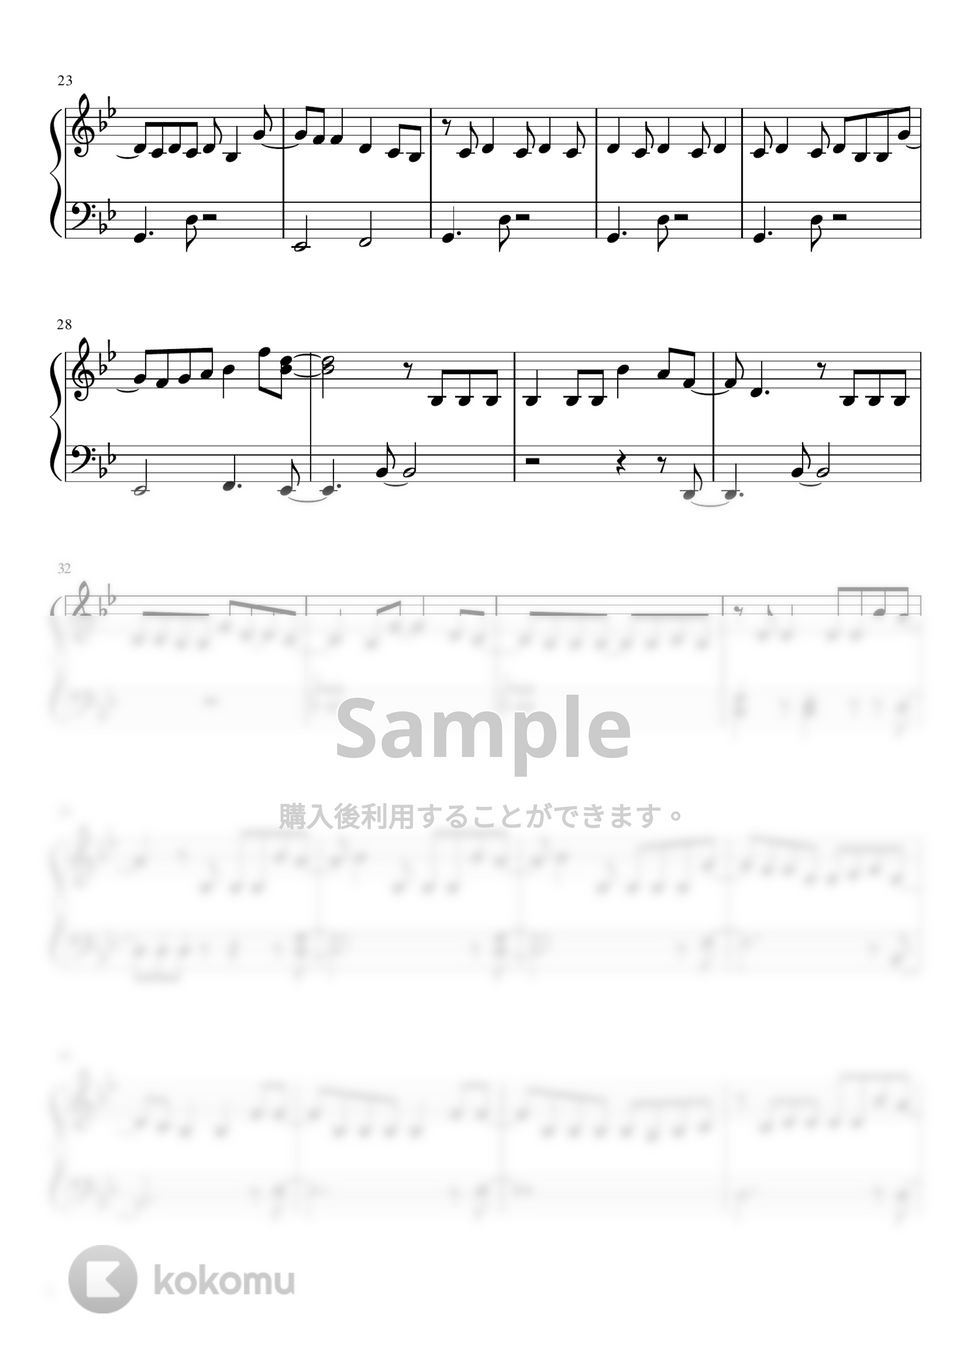 呪術廻戦OP - 廻廻奇譚(かいかいきたん) (入門初級 / ワンコーラス / 簡単ピアノ) by さく山P